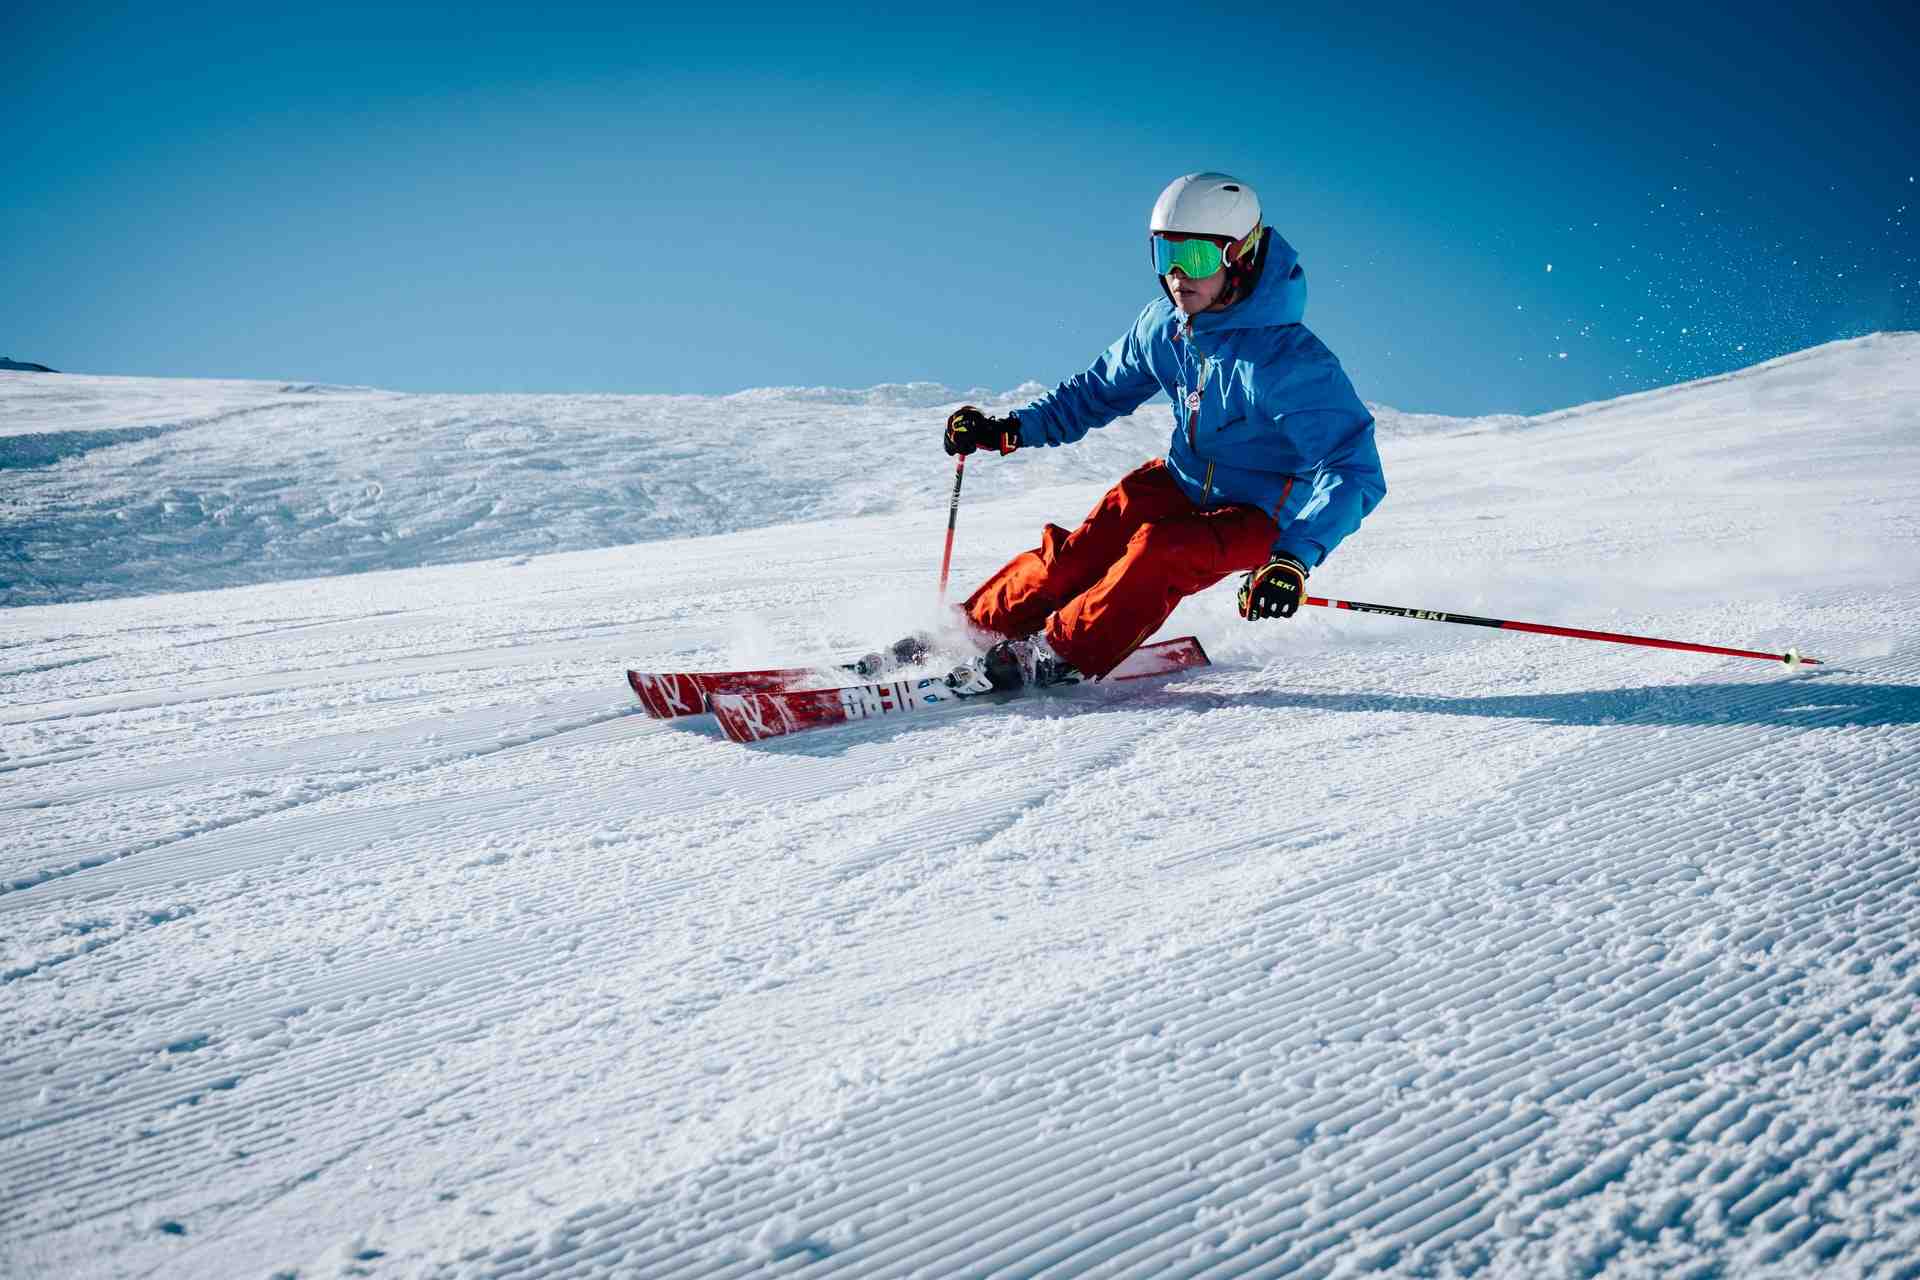 Comment skier pas cher?